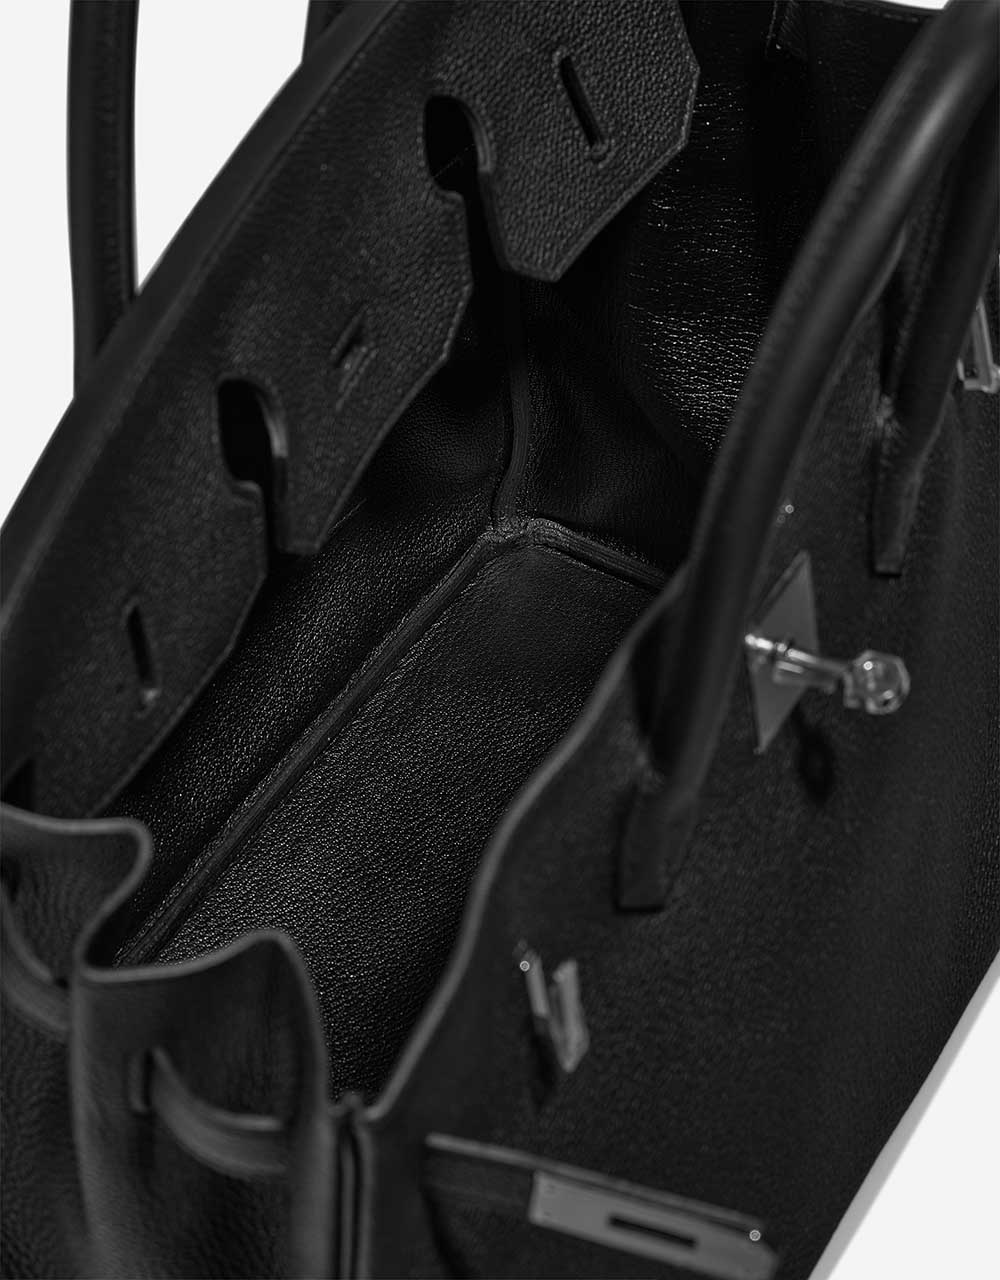 Hermès Birkin 35 Black Inside | Verkaufen Sie Ihre Designertasche auf Saclab.com